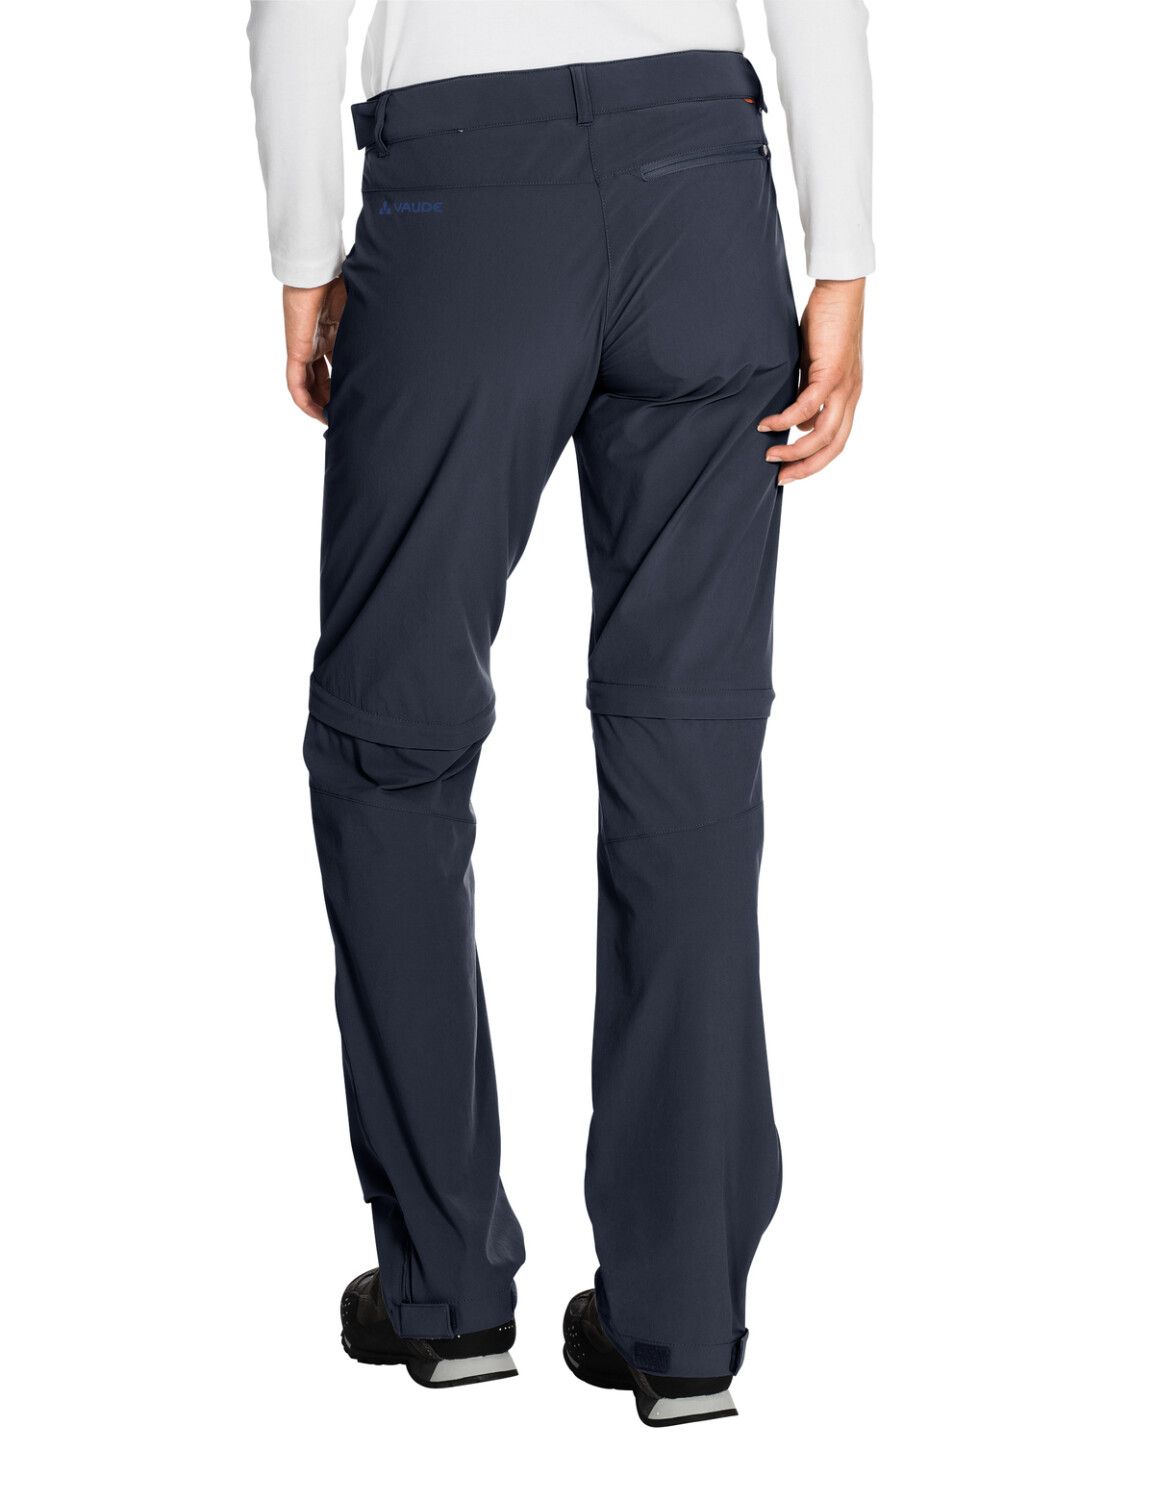 VAUDE Women's Farley Stretch ZO T-Zip Pants (Bild 58)